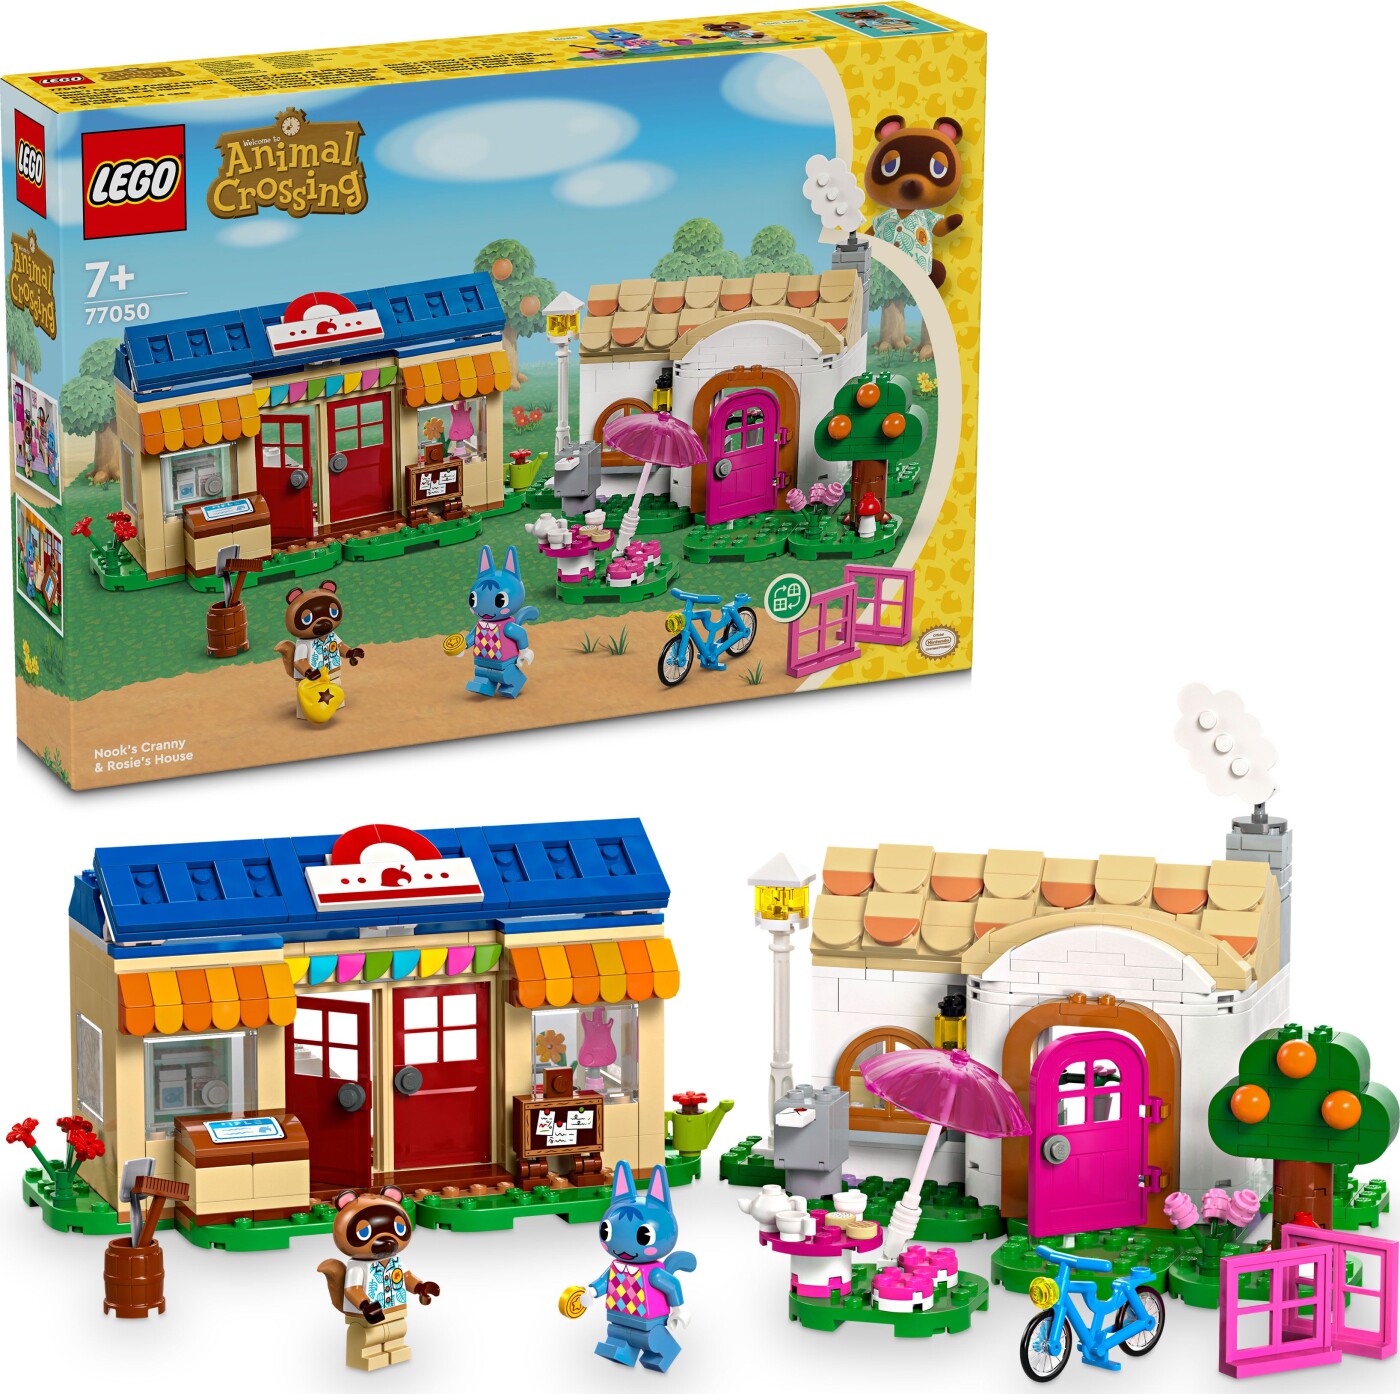 Billede af Lego Animal Crossing - Nook's Cranny Og Rosies Hus - 77050